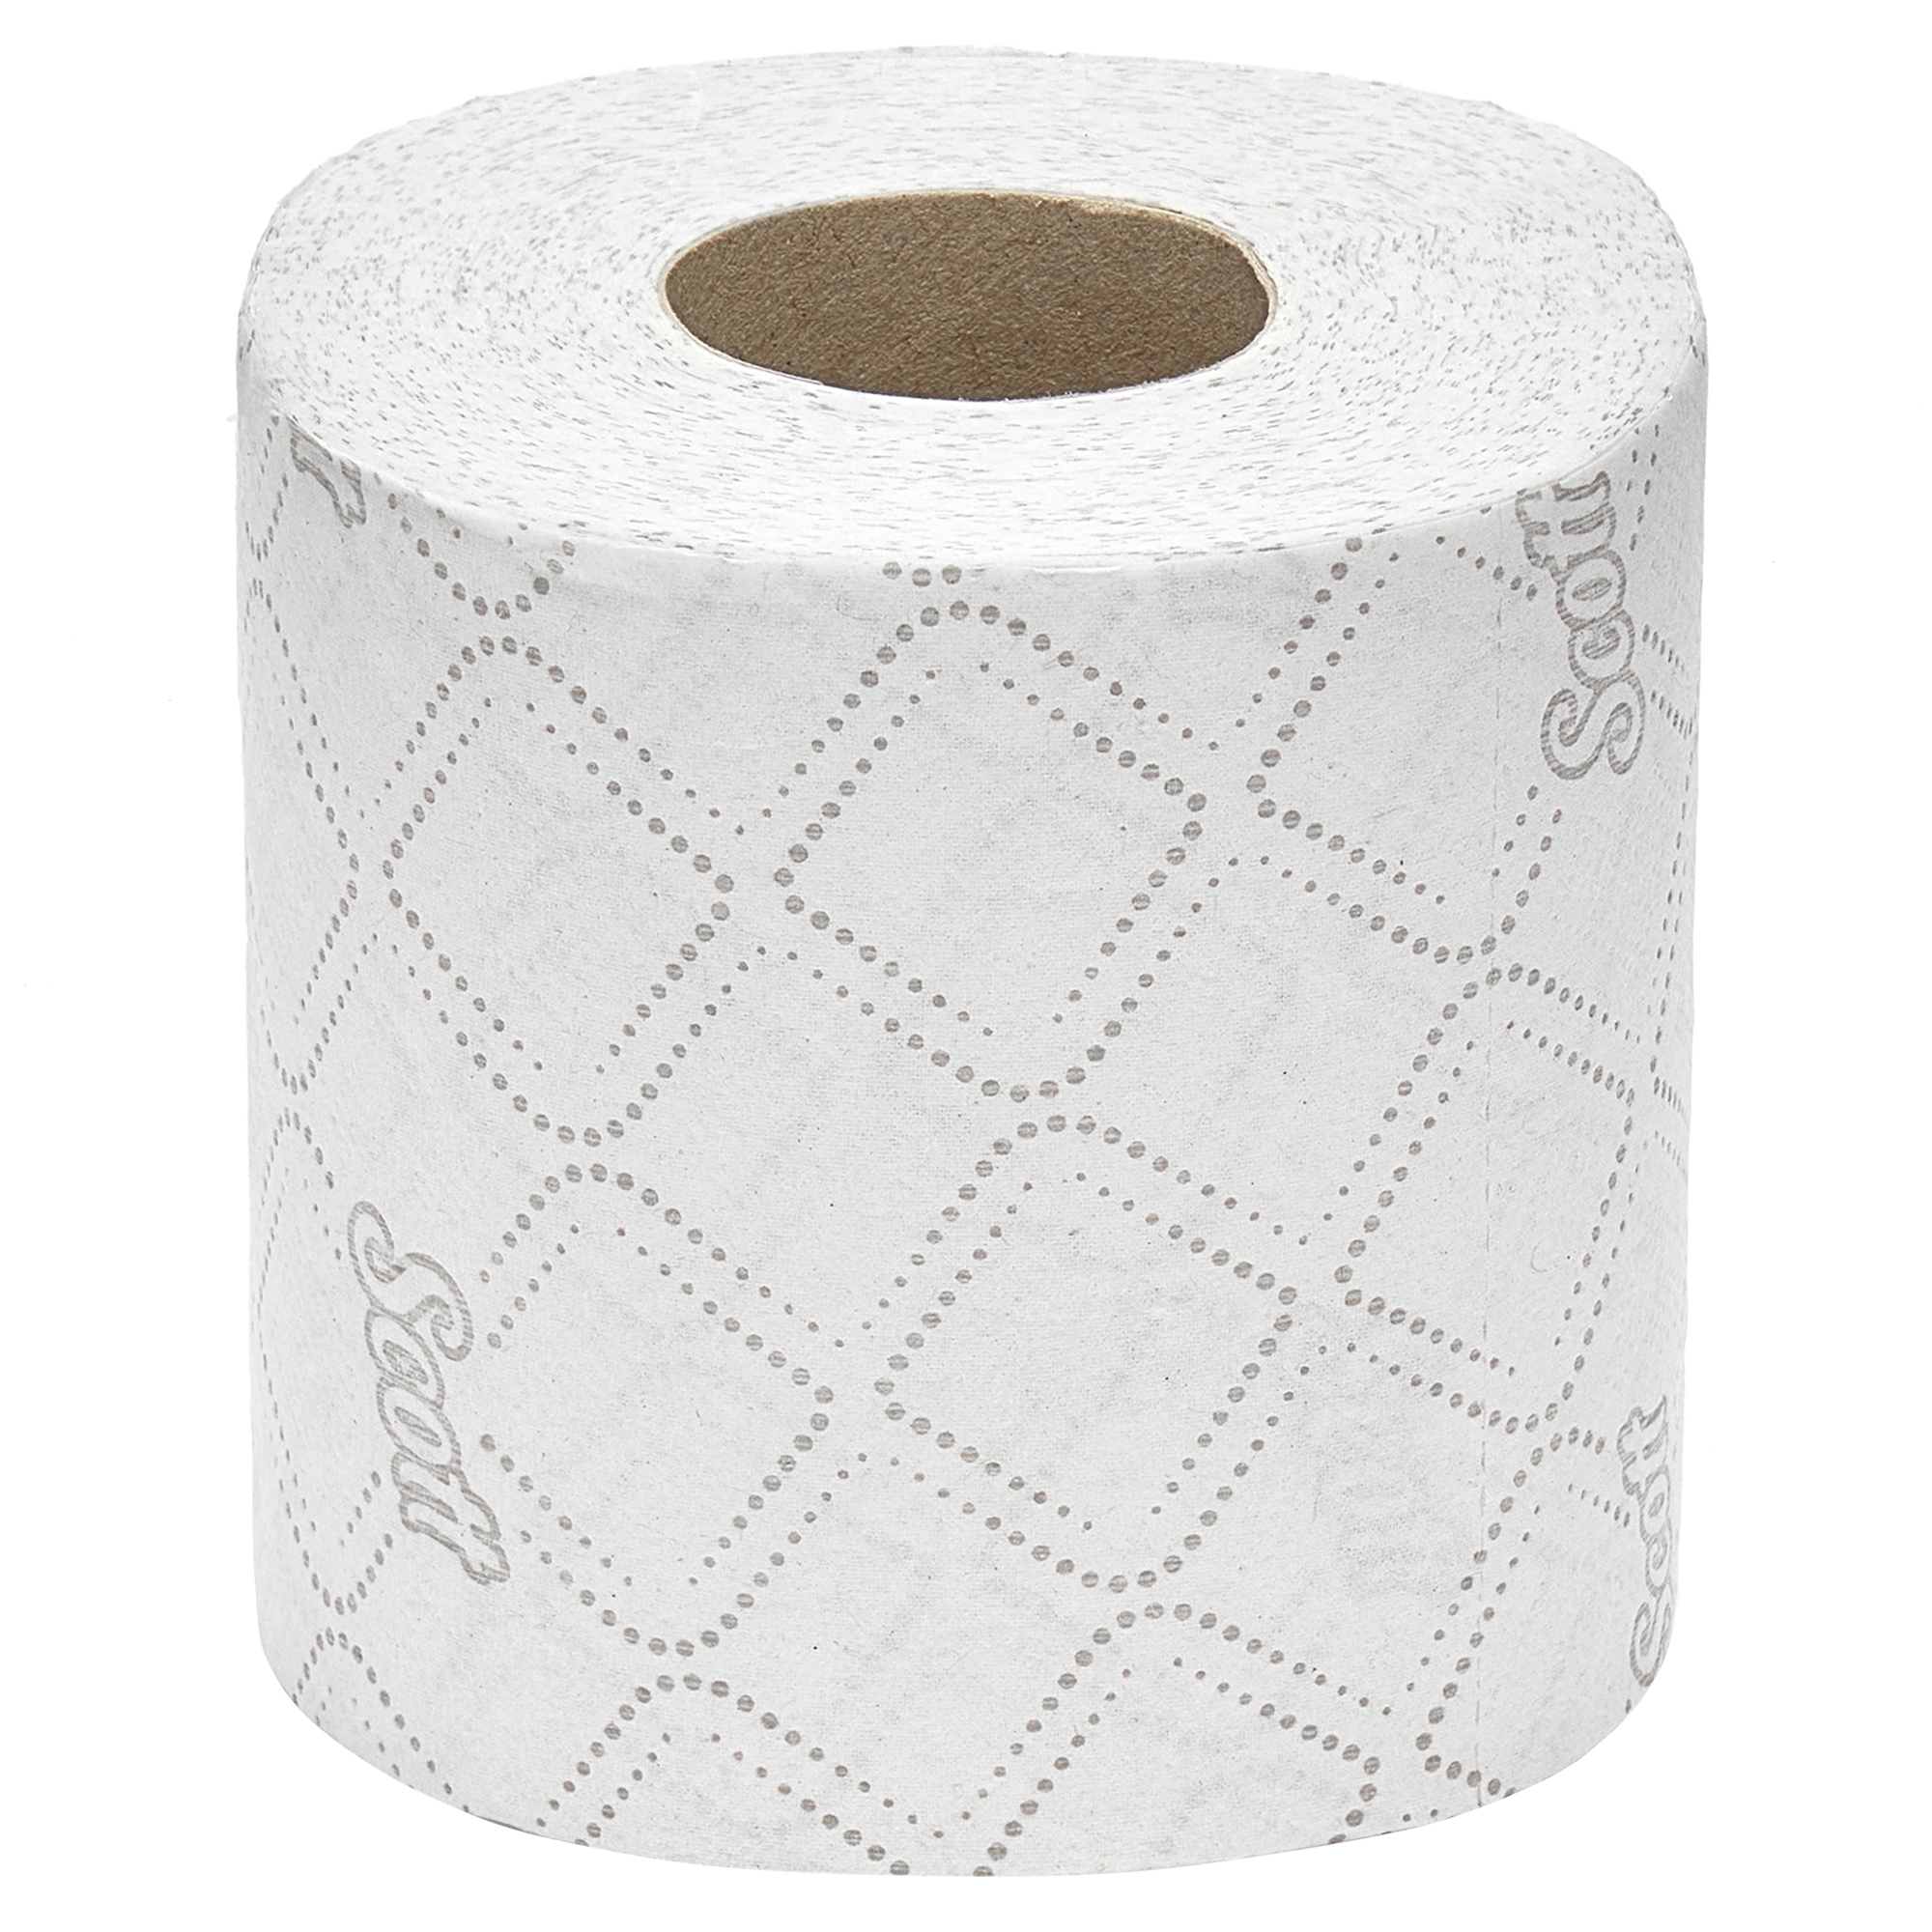 KLEENEX® 2 Ply Toilet Tissue 